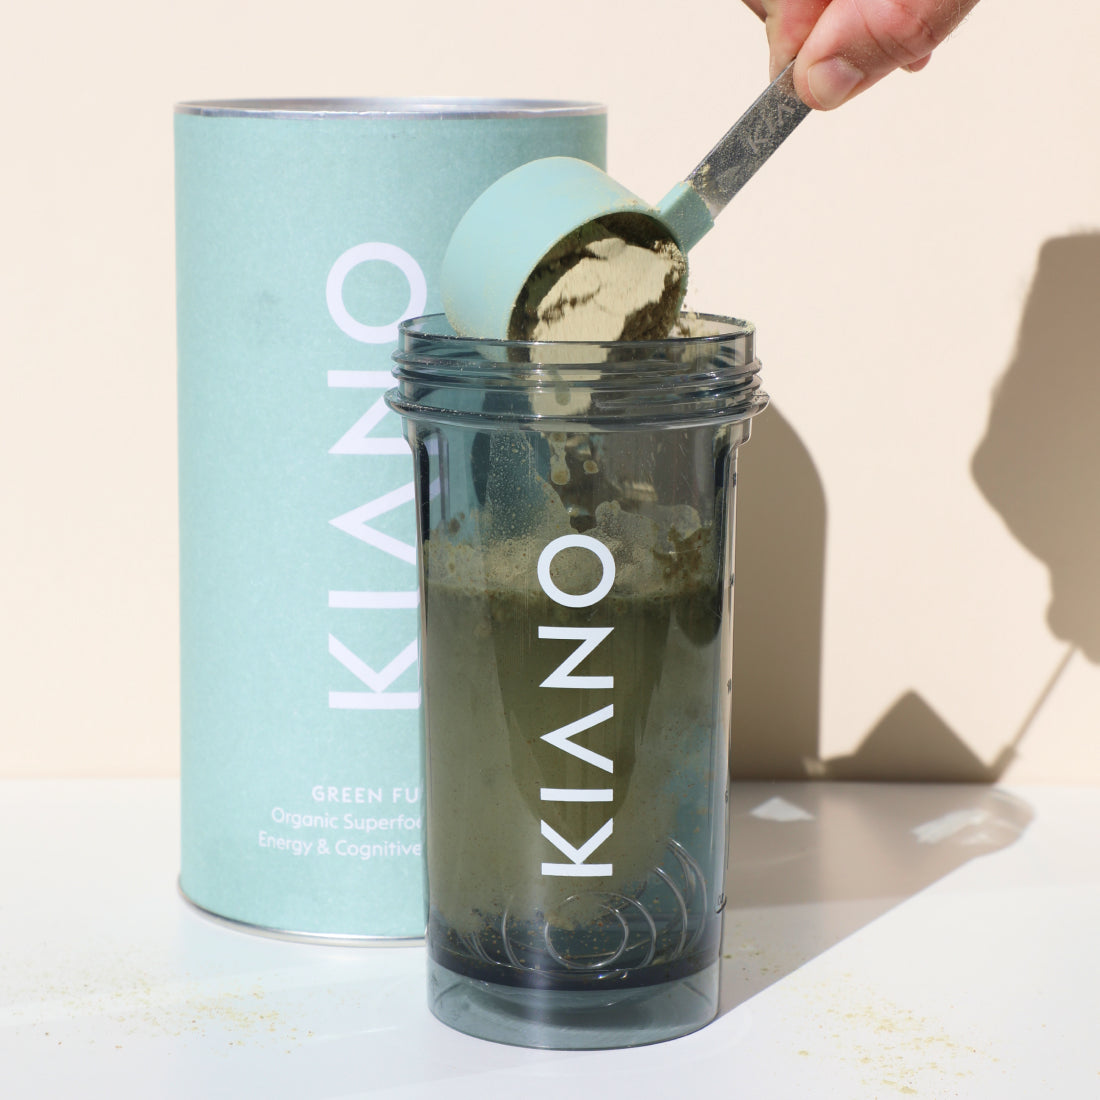 KIANO's Meal Shake med Detox Greens: En bekväm lösning för välbefinnande